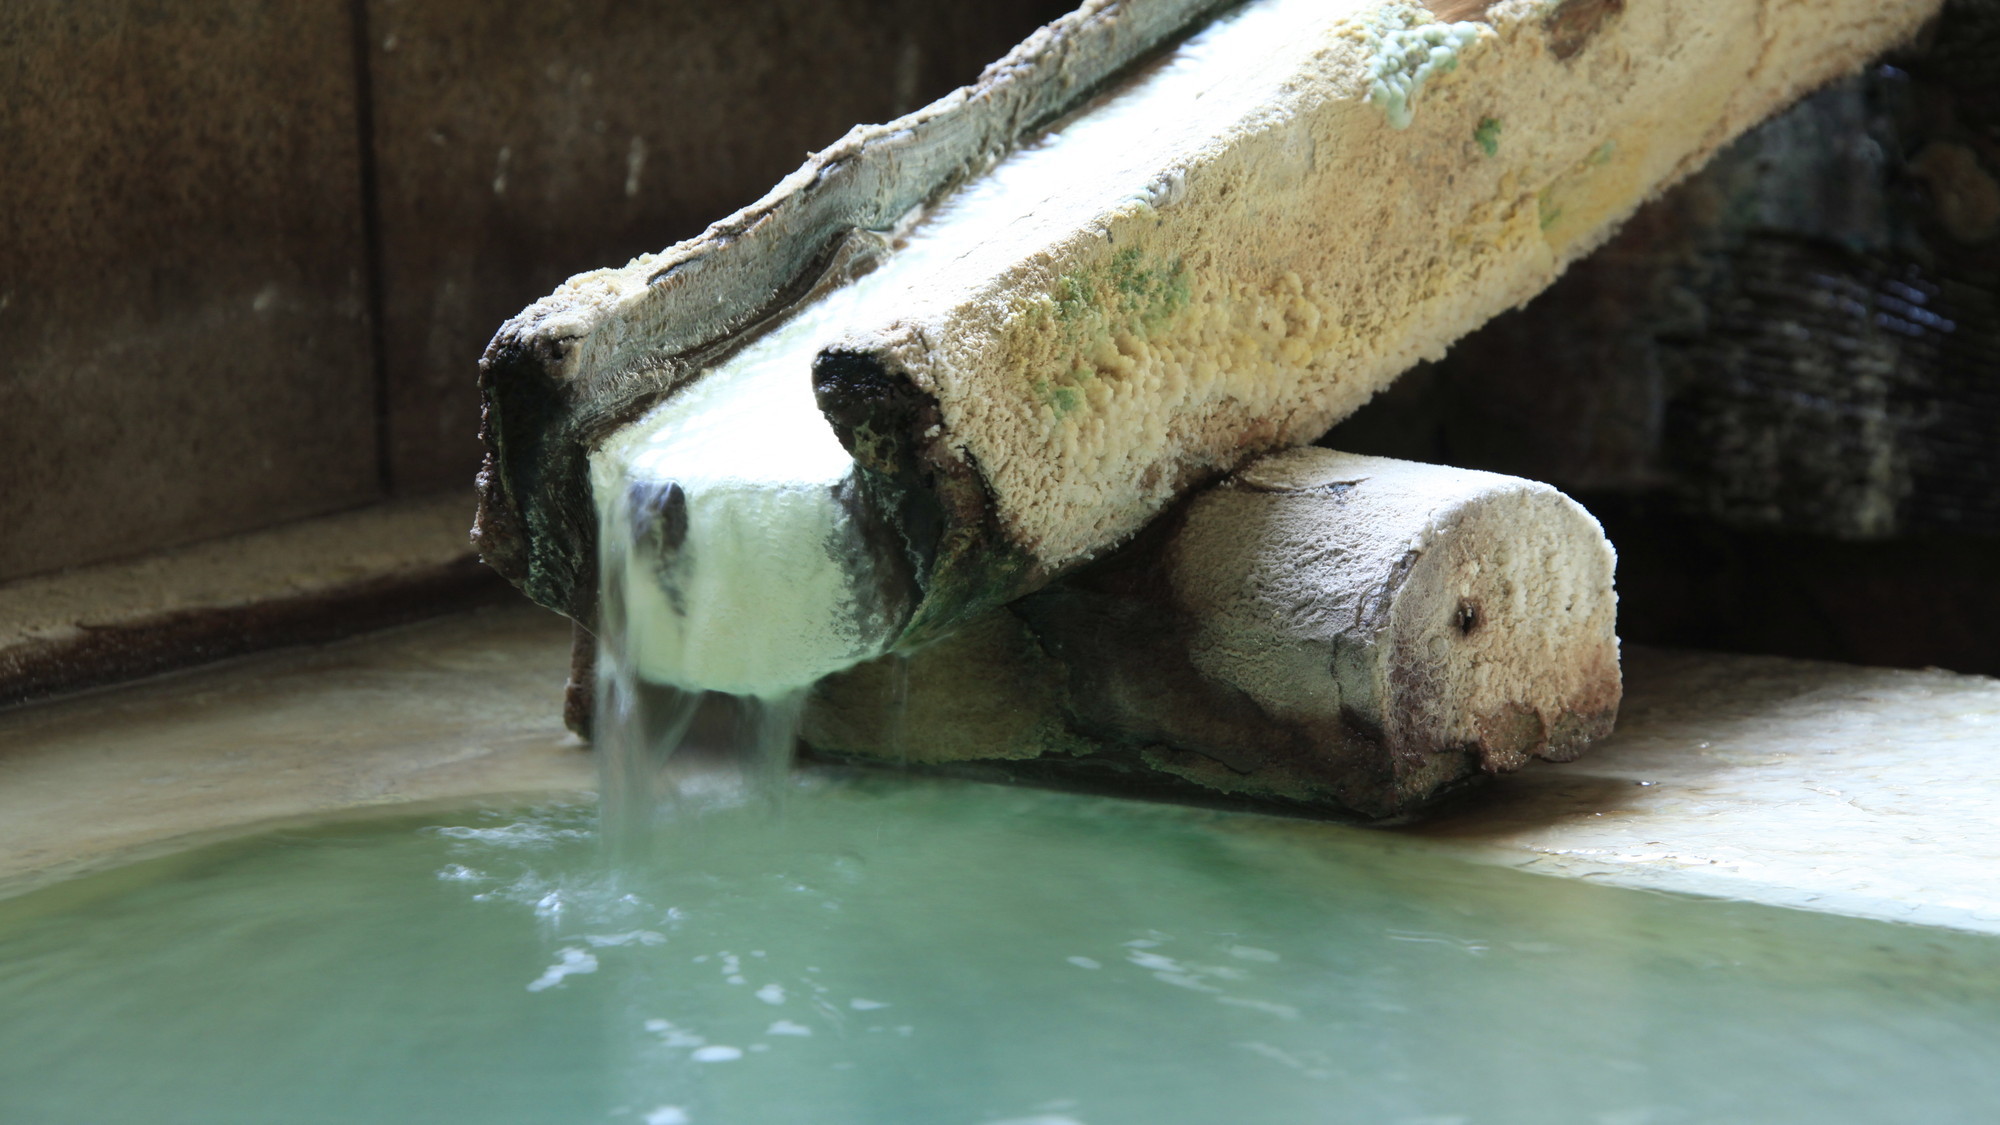 名湯『白旗の湯』は、草津地域でも10軒の宿でしかお楽しみいただけない希少温泉です。